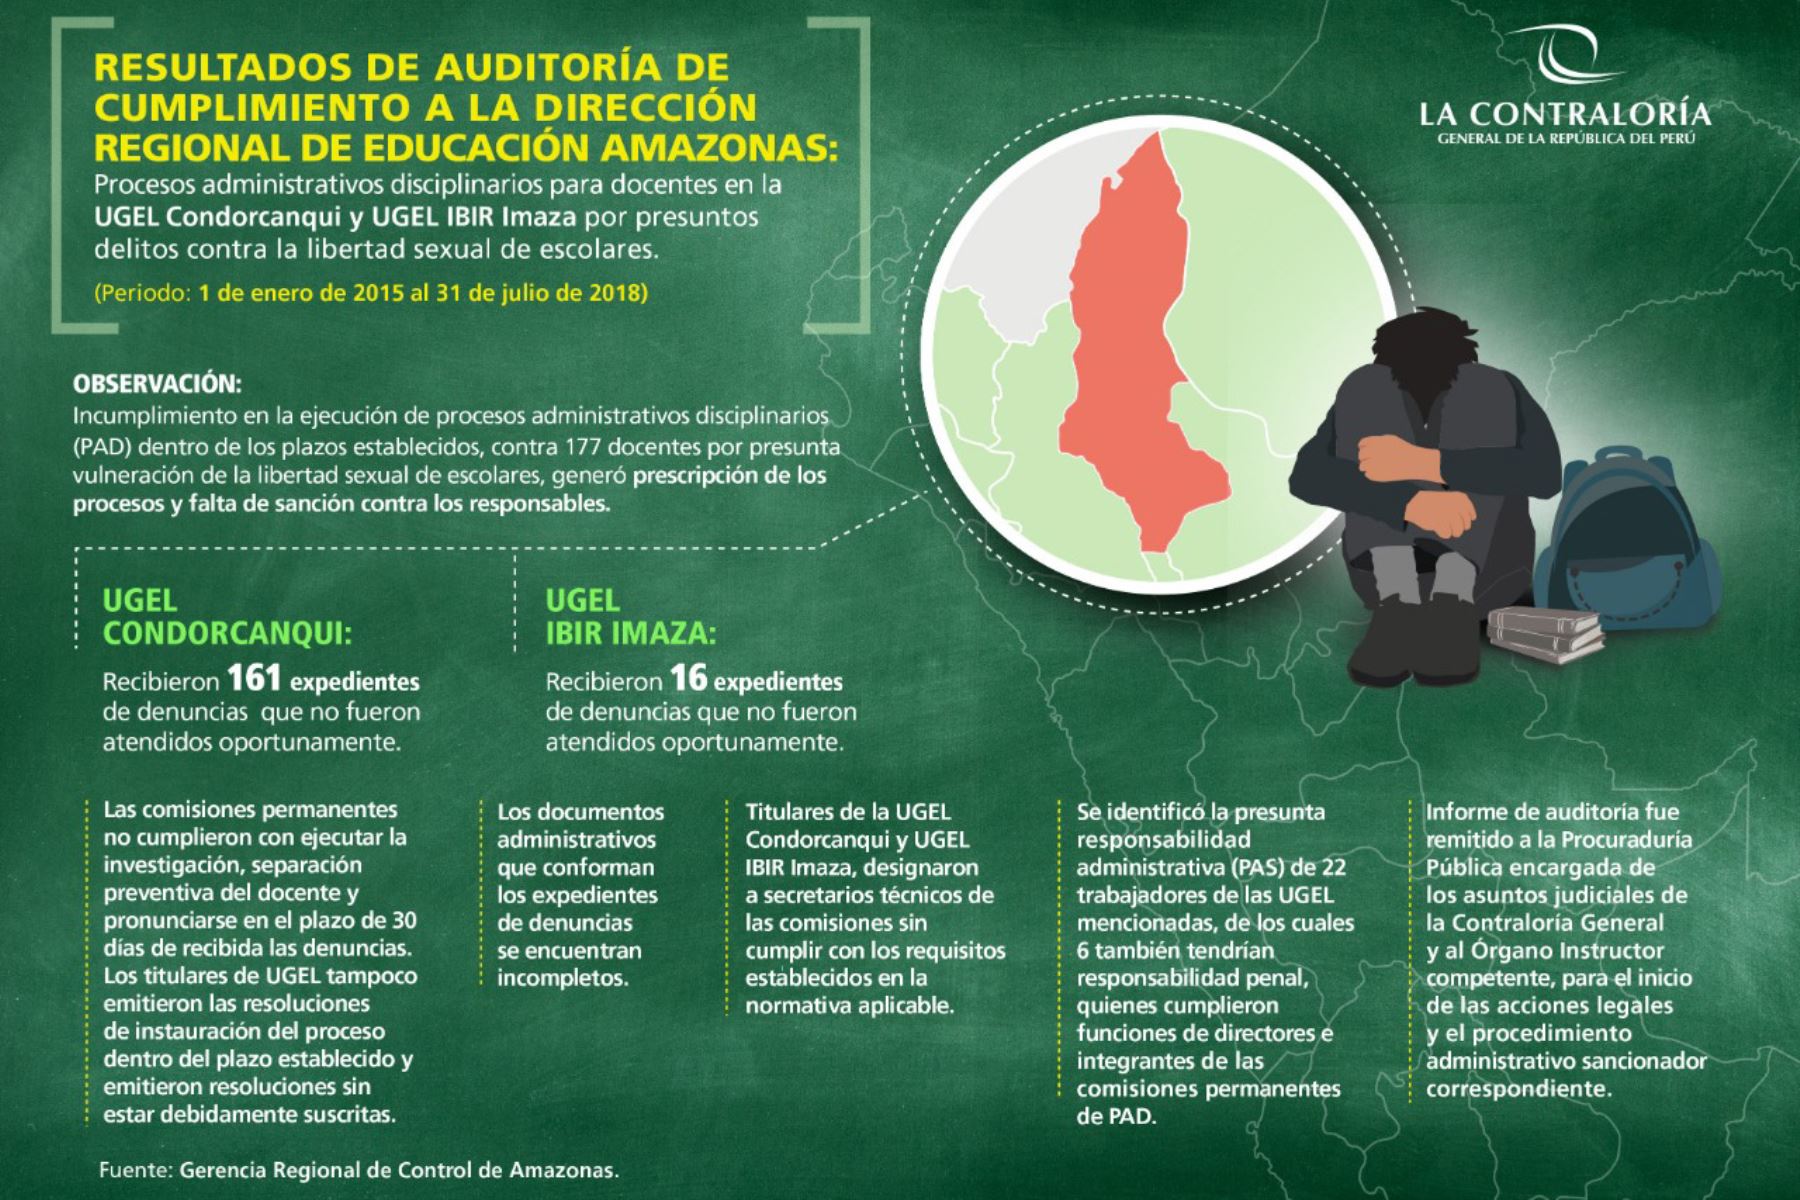 Contraloría afirma que denuncias contra docentes por delitos sexuales en región Amazonas no fueron atendidas oportunamente. ANDINA/Difusión